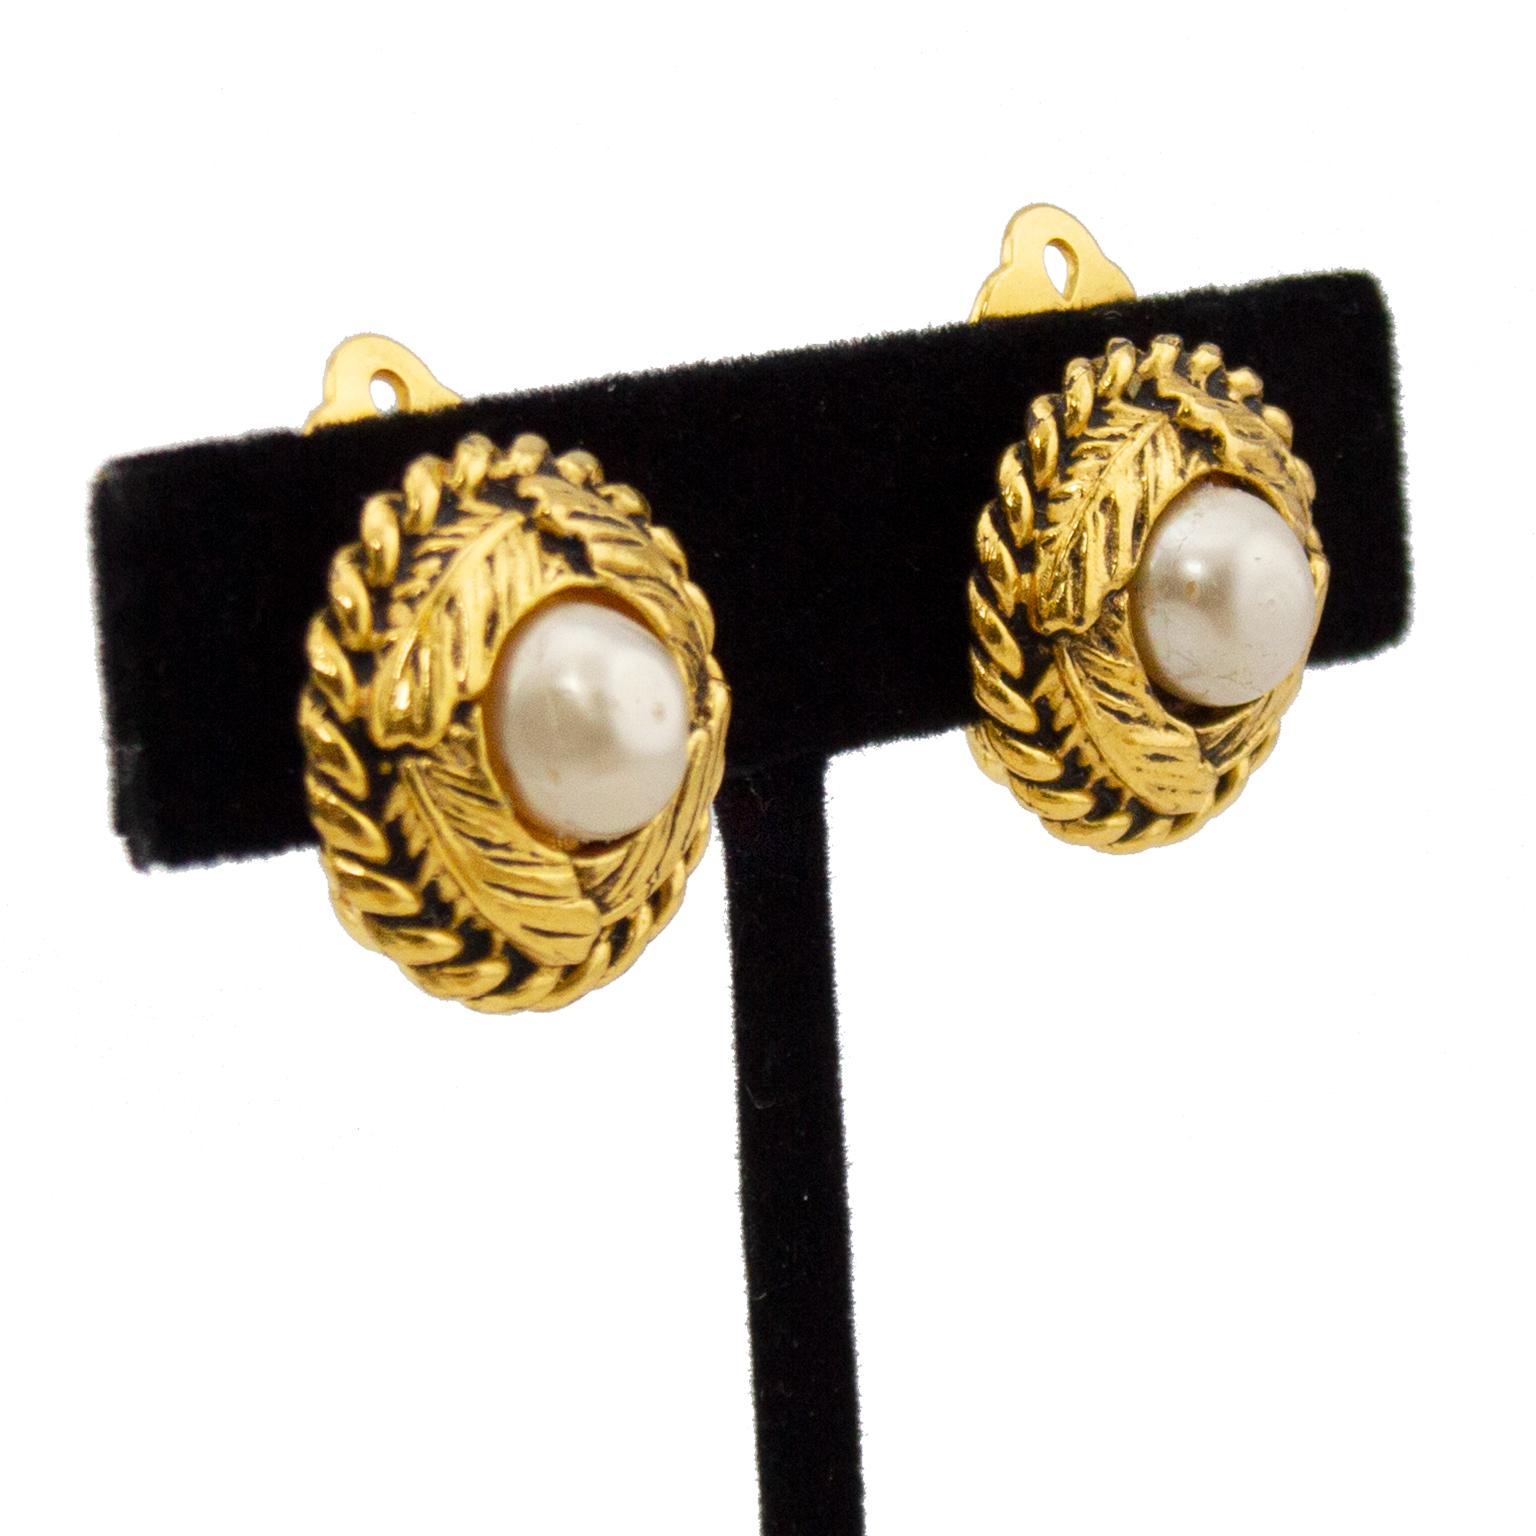 Klassische und zeitlose Chanel-Ohrringe aus goldfarbenem Metall mit Clip. Gedrehte Verzierung mit Bananenblättern, die um eine einzelne Perle in der Mitte gewickelt sind. Chanel-Logo-Plakette auf der Rückseite - dieses Design ist älter als die